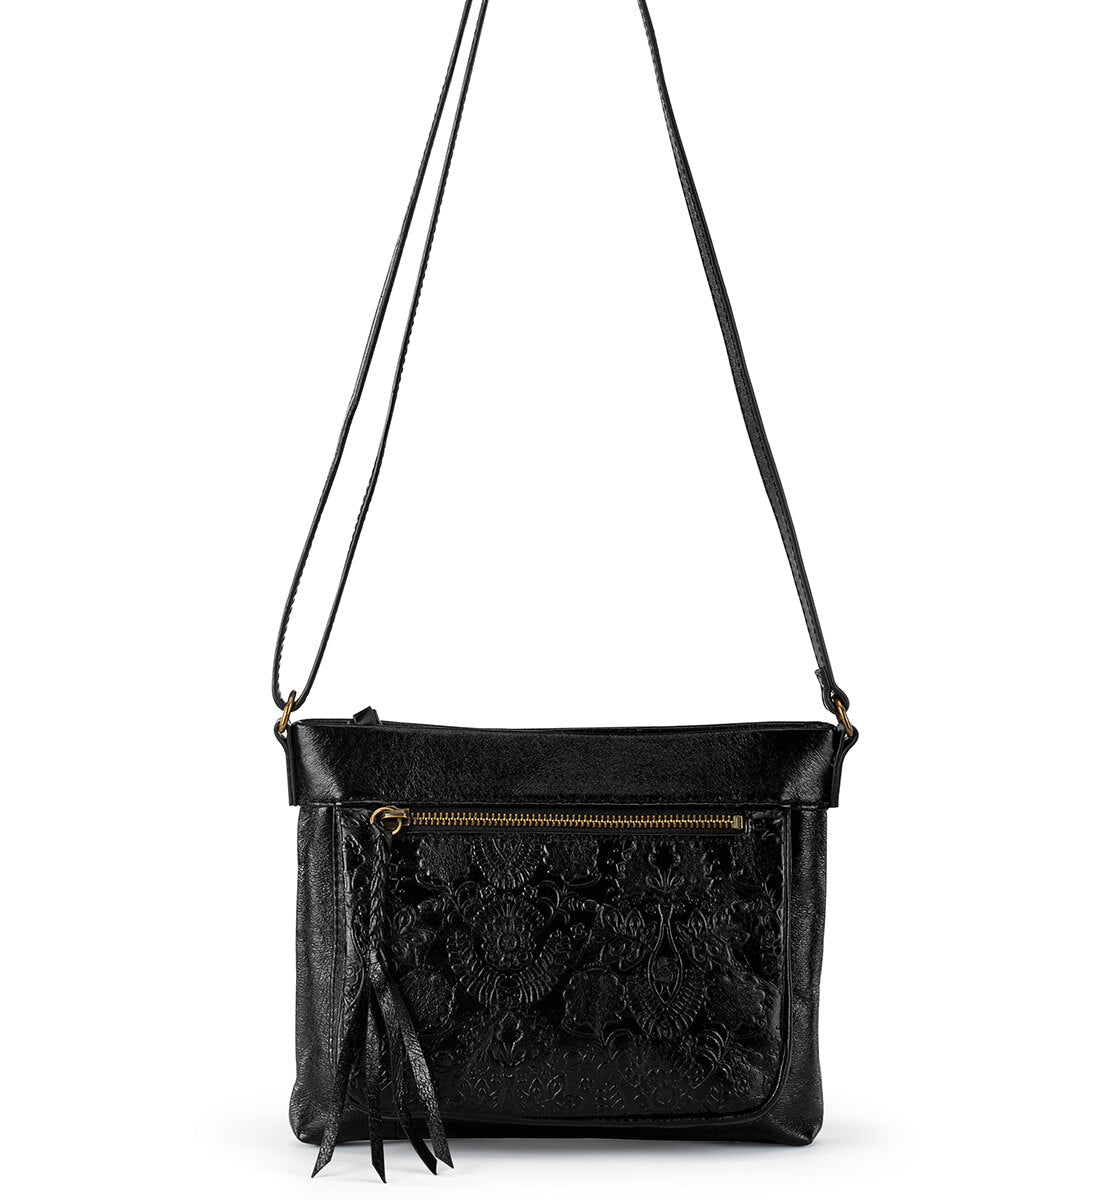 The SAK Black Leather Shoulder Bag Purse,adjustable Strap, Multi pocket |  eBay